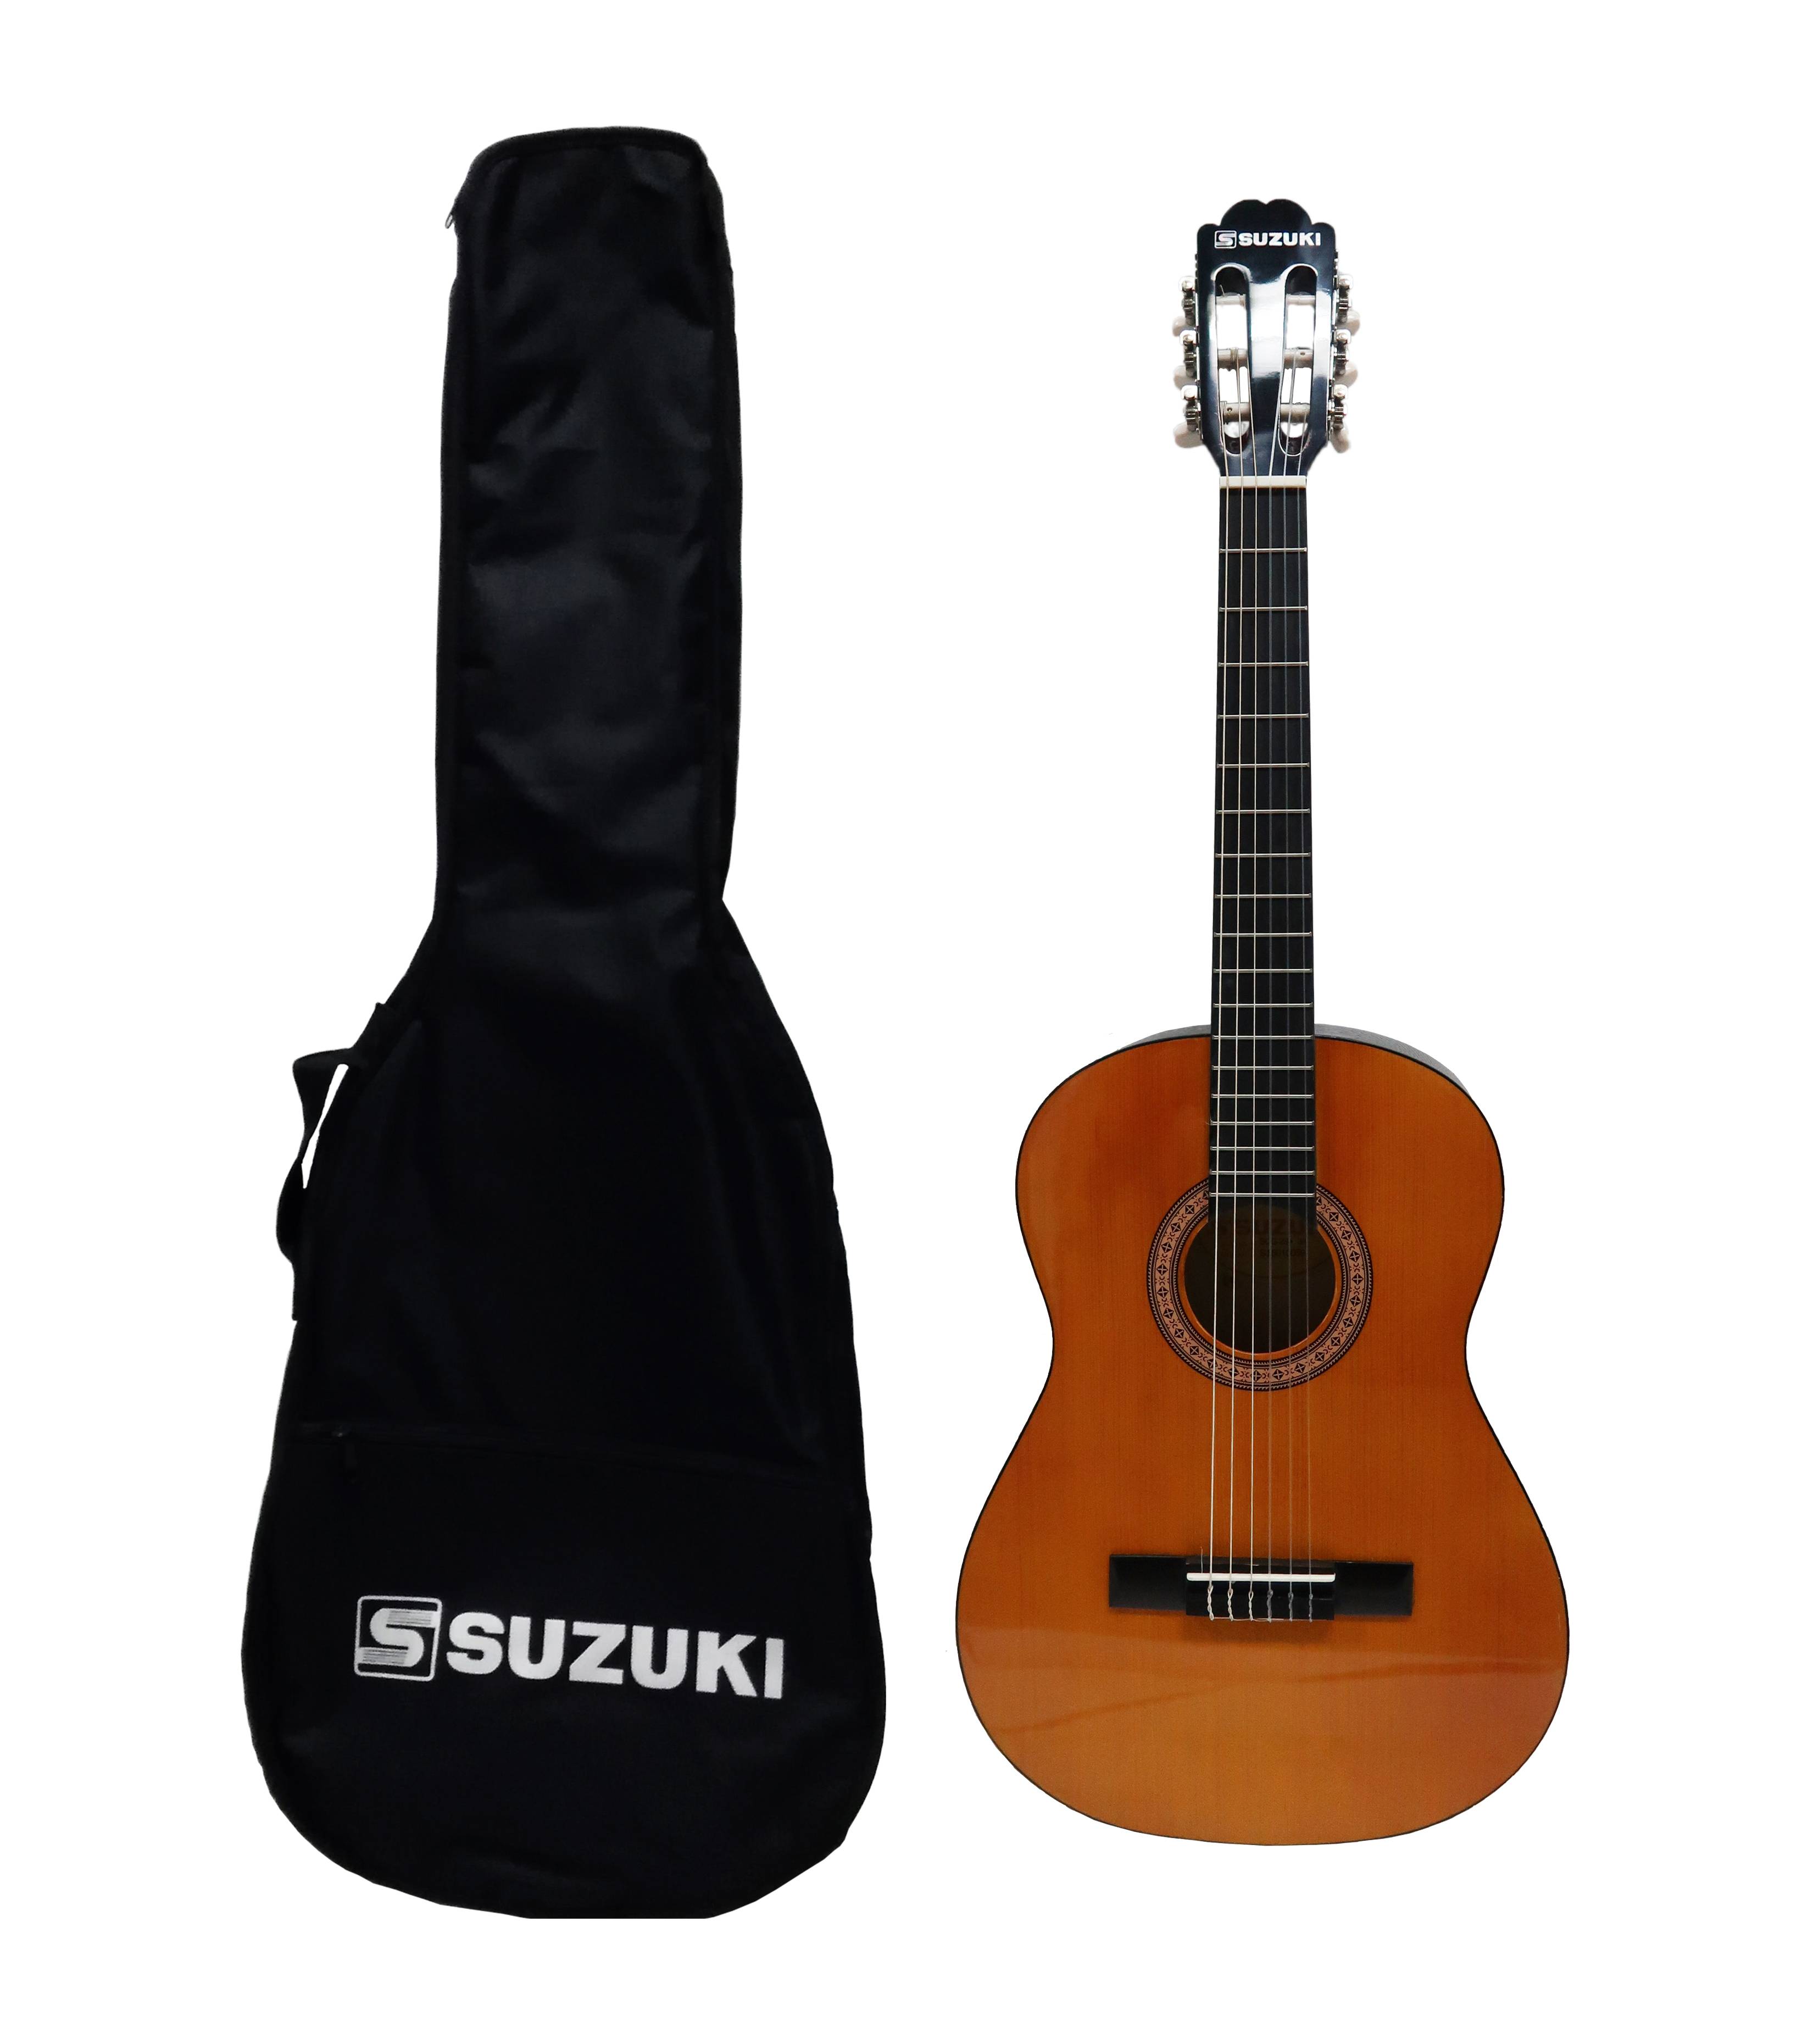 Детальная картинка товара Suzuki SCG-2S+3/4 NL в магазине Музыкальная Тема